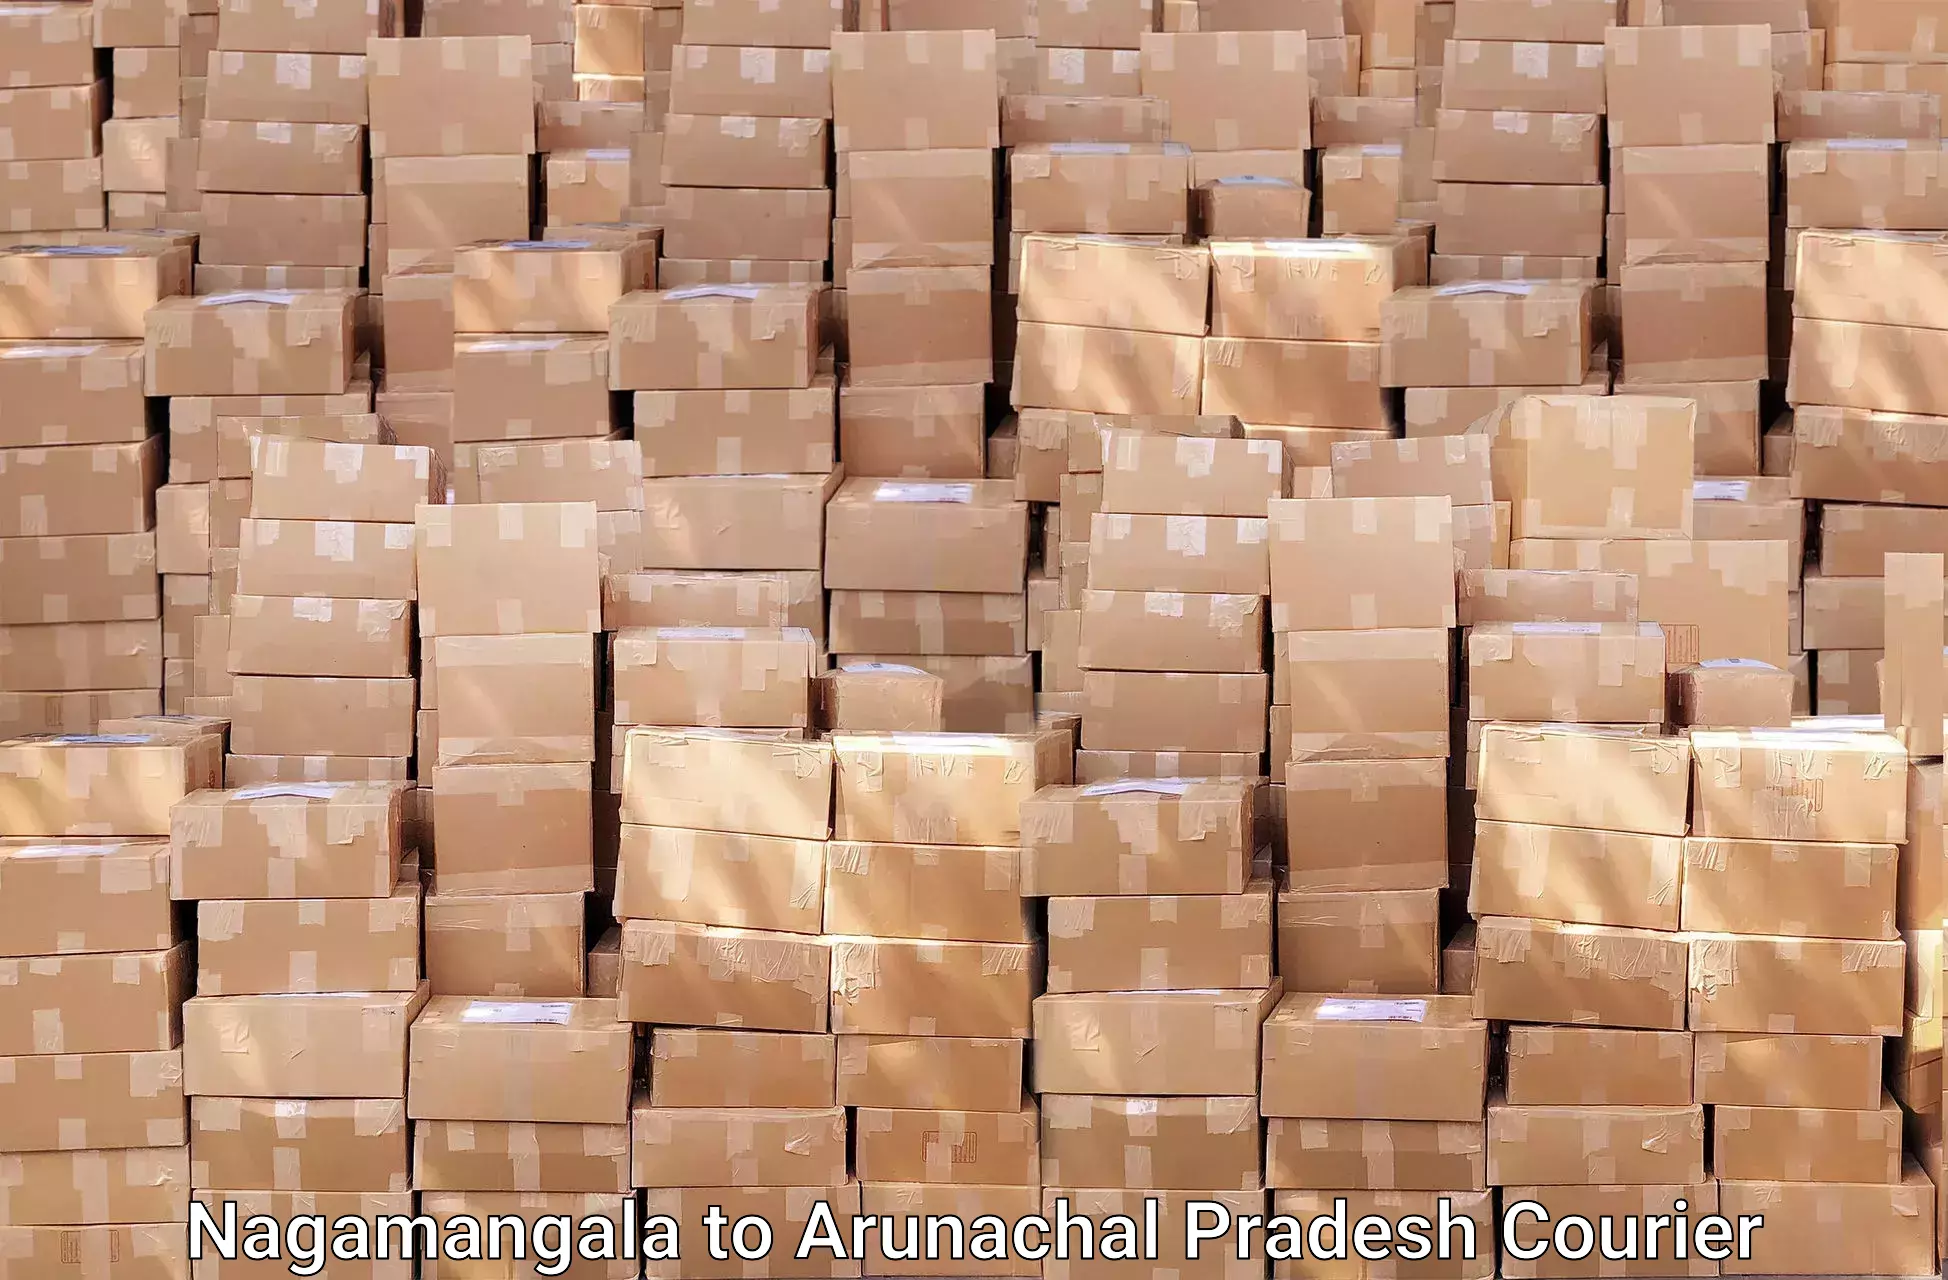 Furniture moving service Nagamangala to Arunachal Pradesh